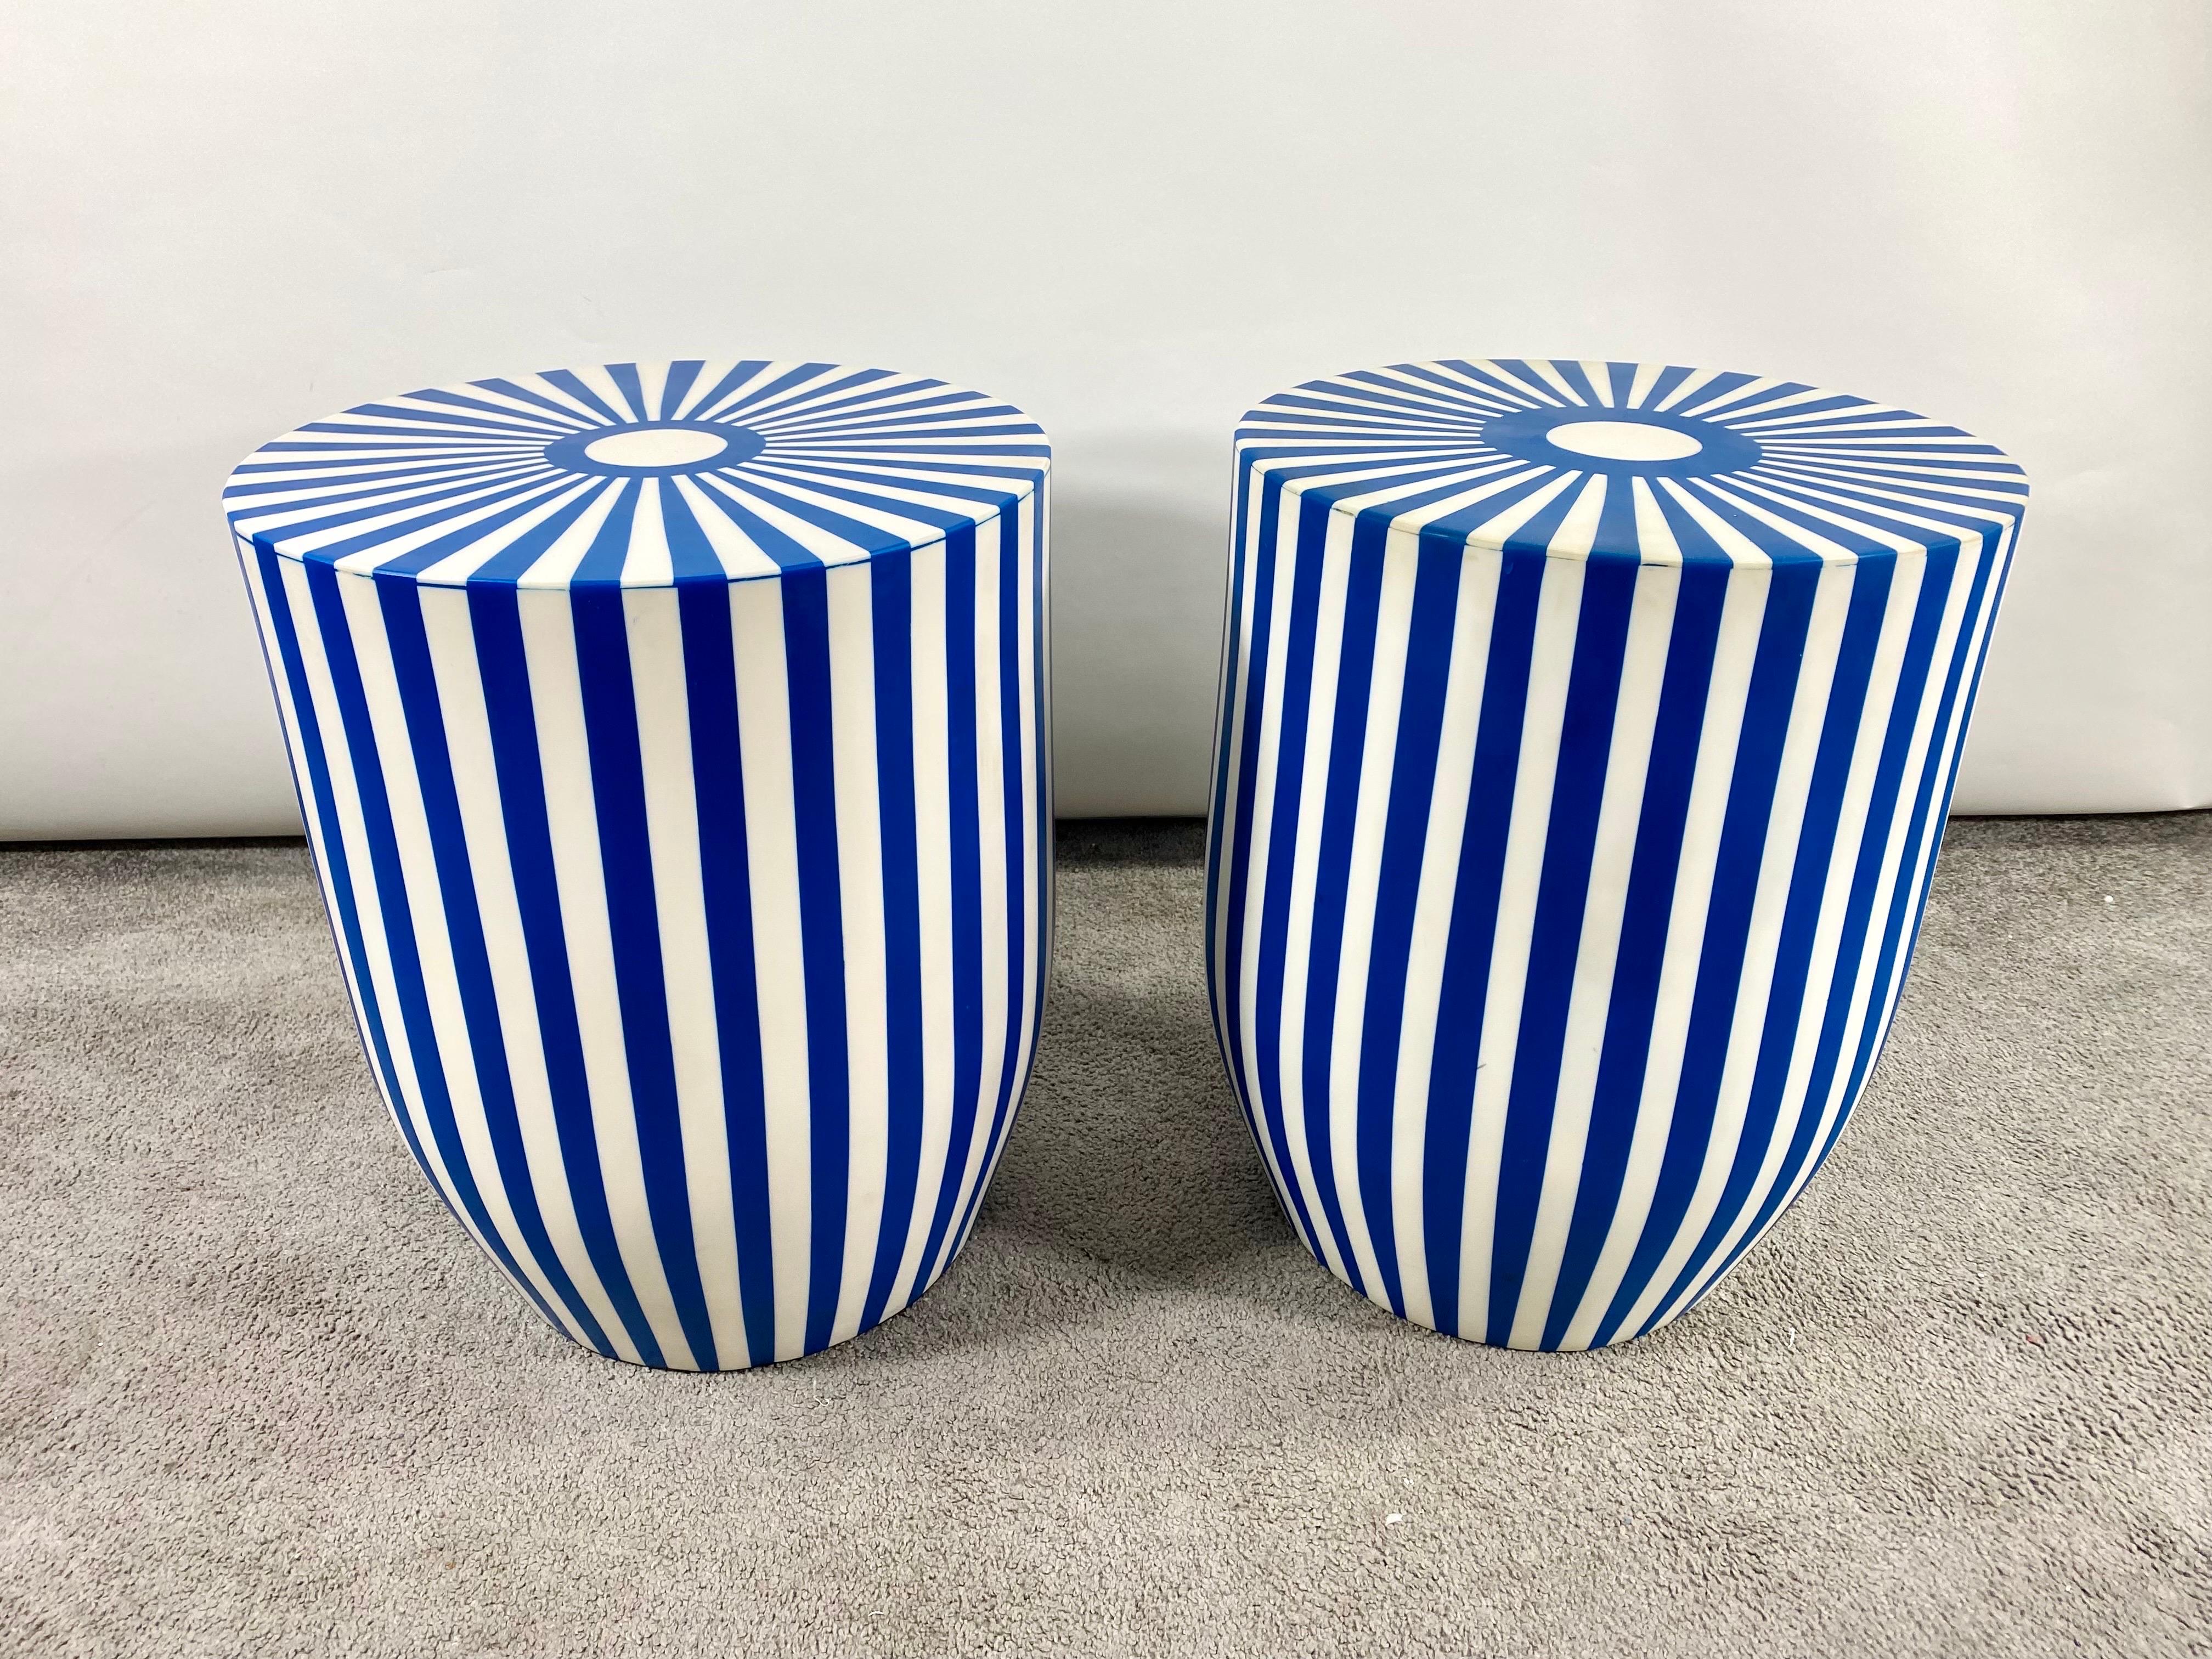 Ein exquisites Paar blauer und weißer Beistelltische oder Hocker im Art-Déco-Stil mit Streifenmuster. Die Tische sind aus hochwertigem Harz gefertigt und haben eine solide und robuste Struktur. Die skulpturalen, zylinderförmigen Tische oder Hocker